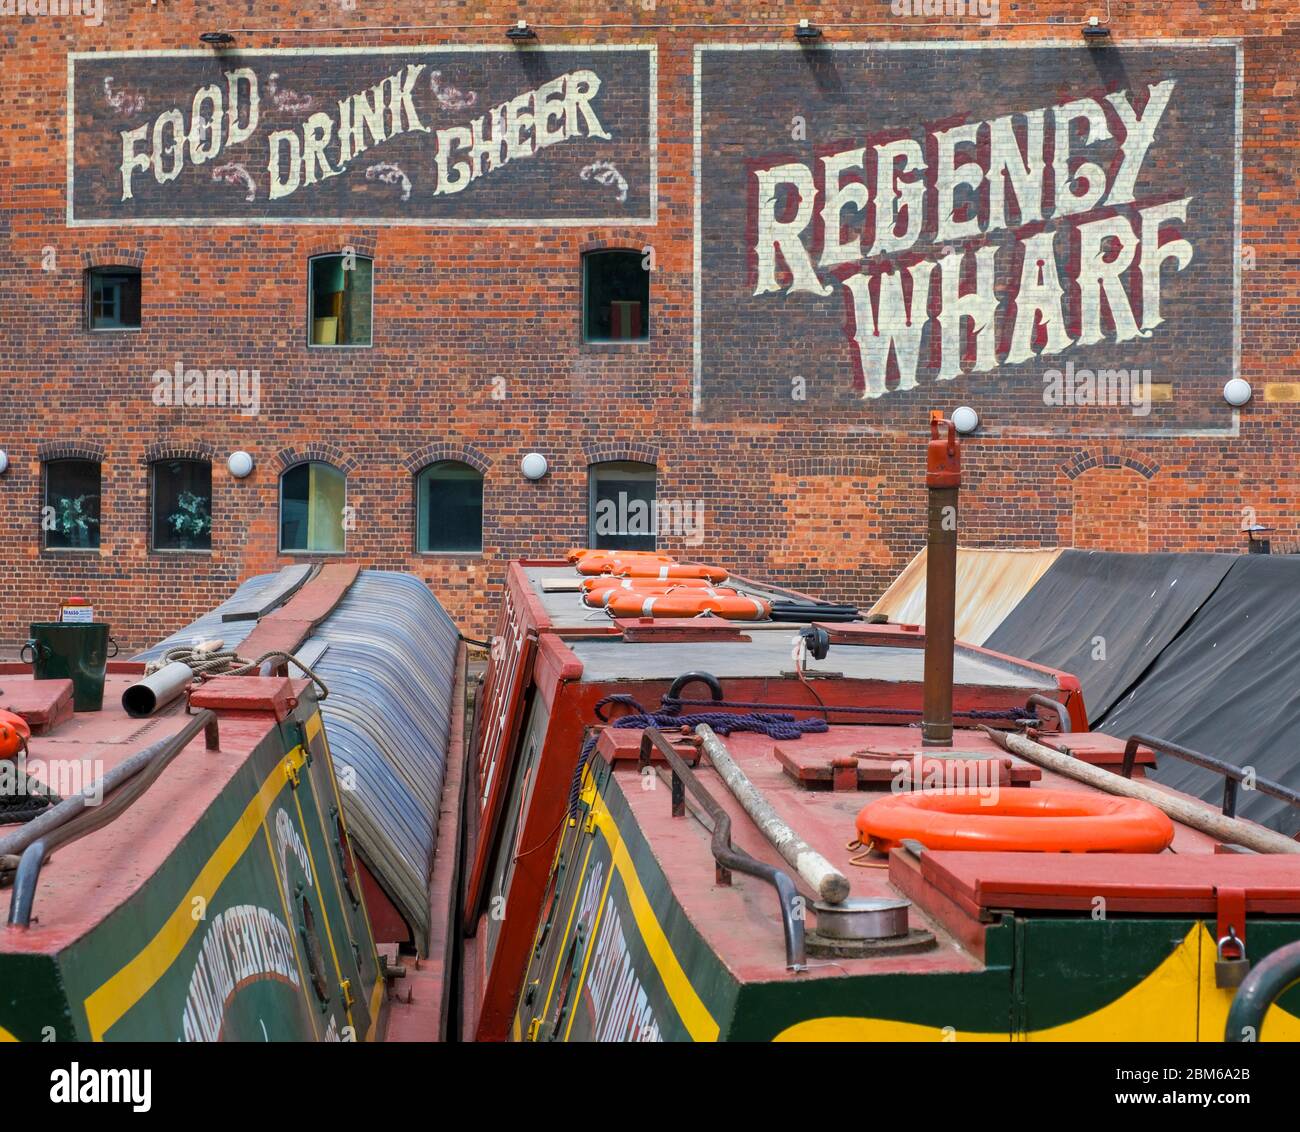 Narrowboats at Regency Wharf , Broadstreet, Birmingham. Stock Photo